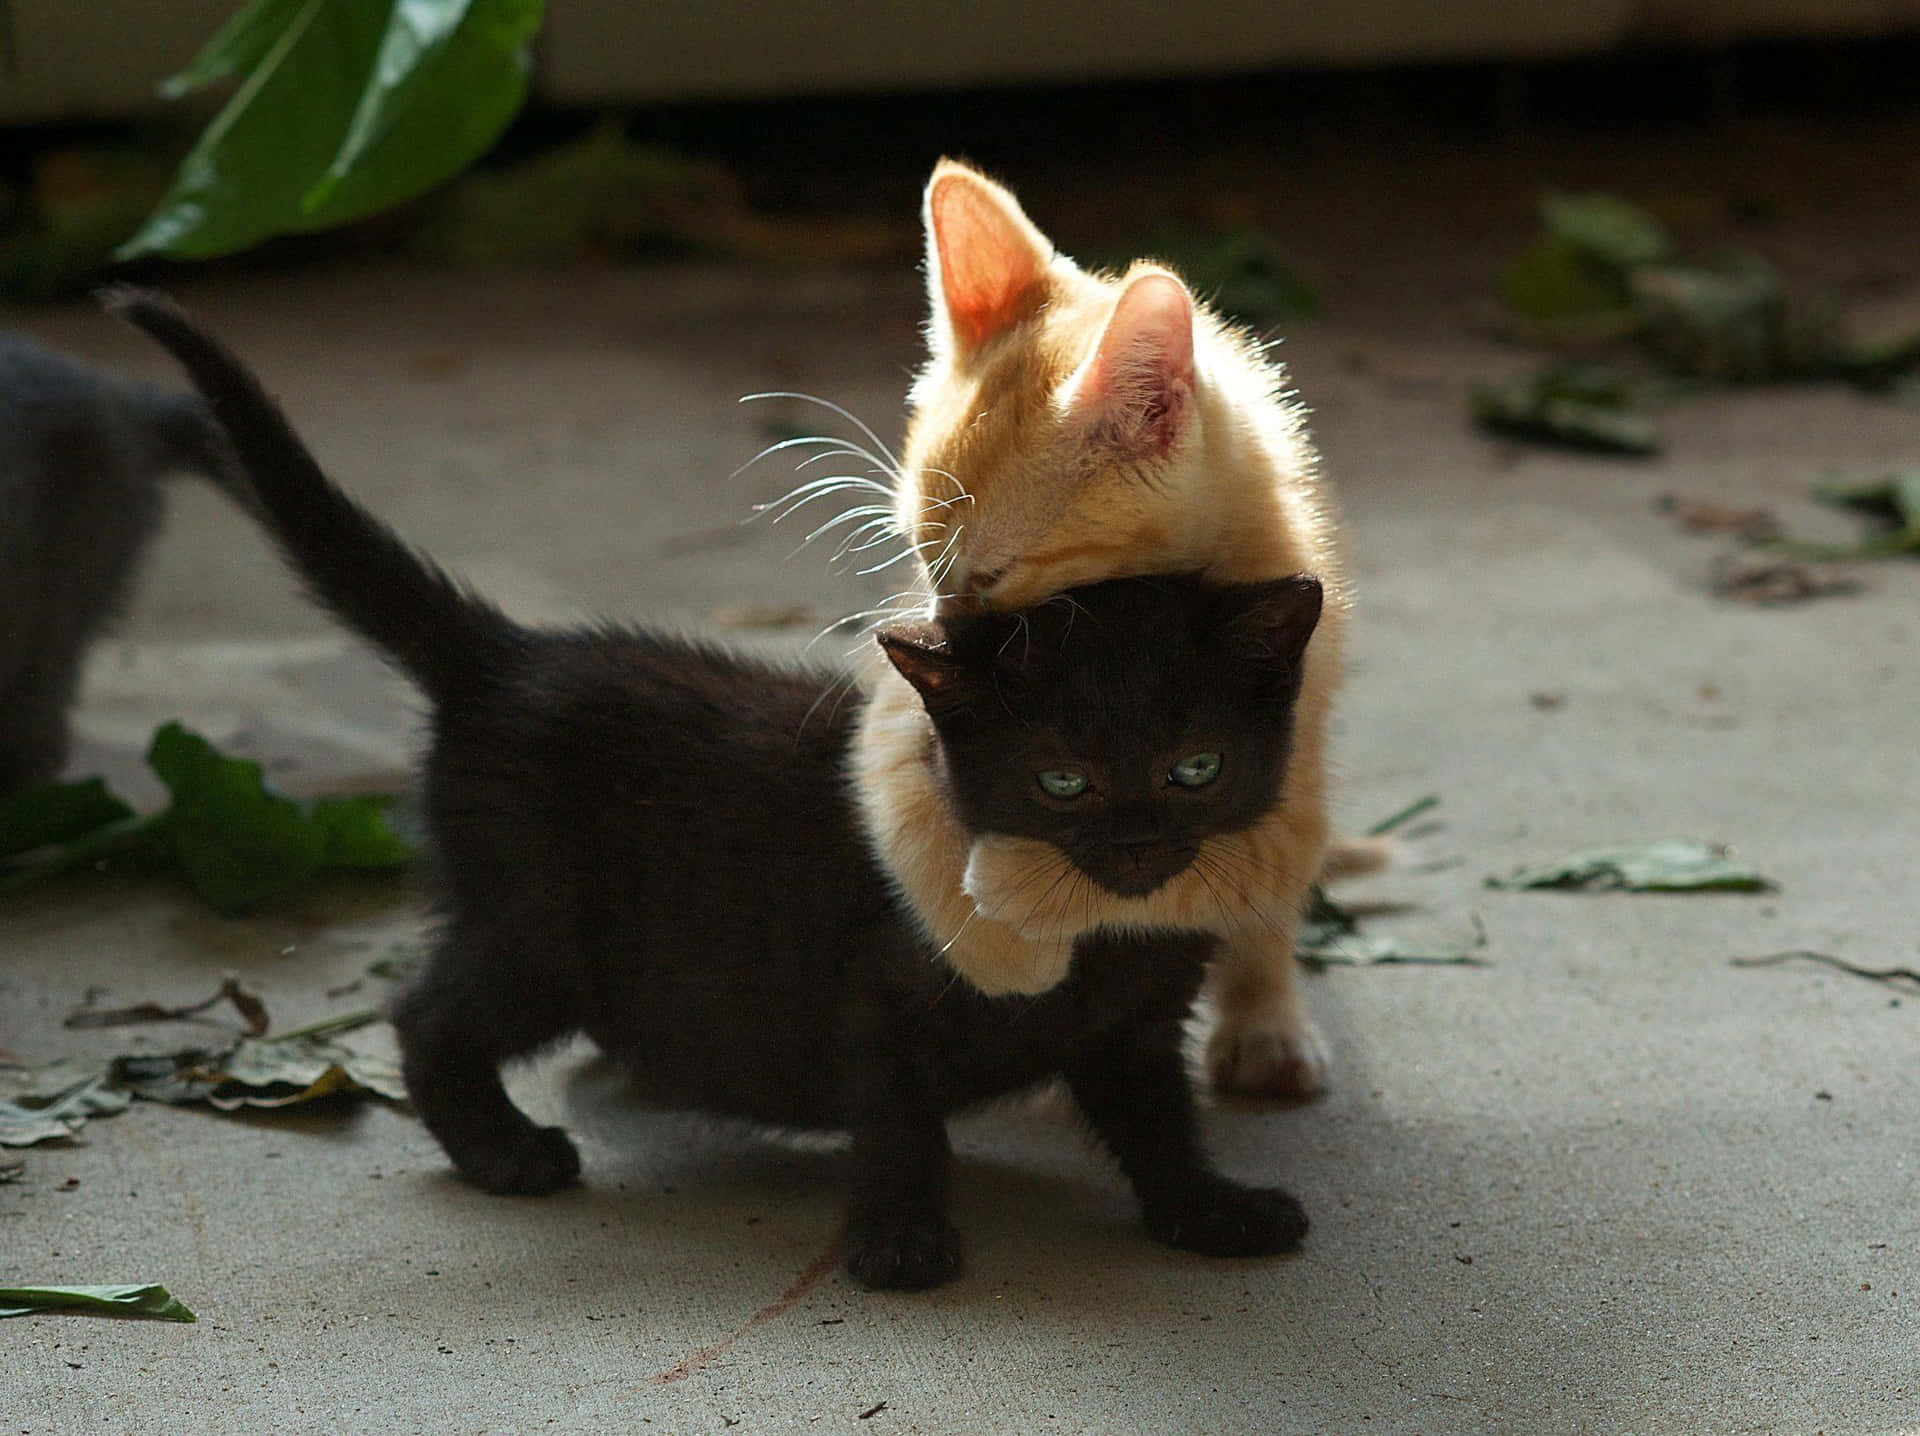 Tristeimagen De Un Gato Negro Abrazando.